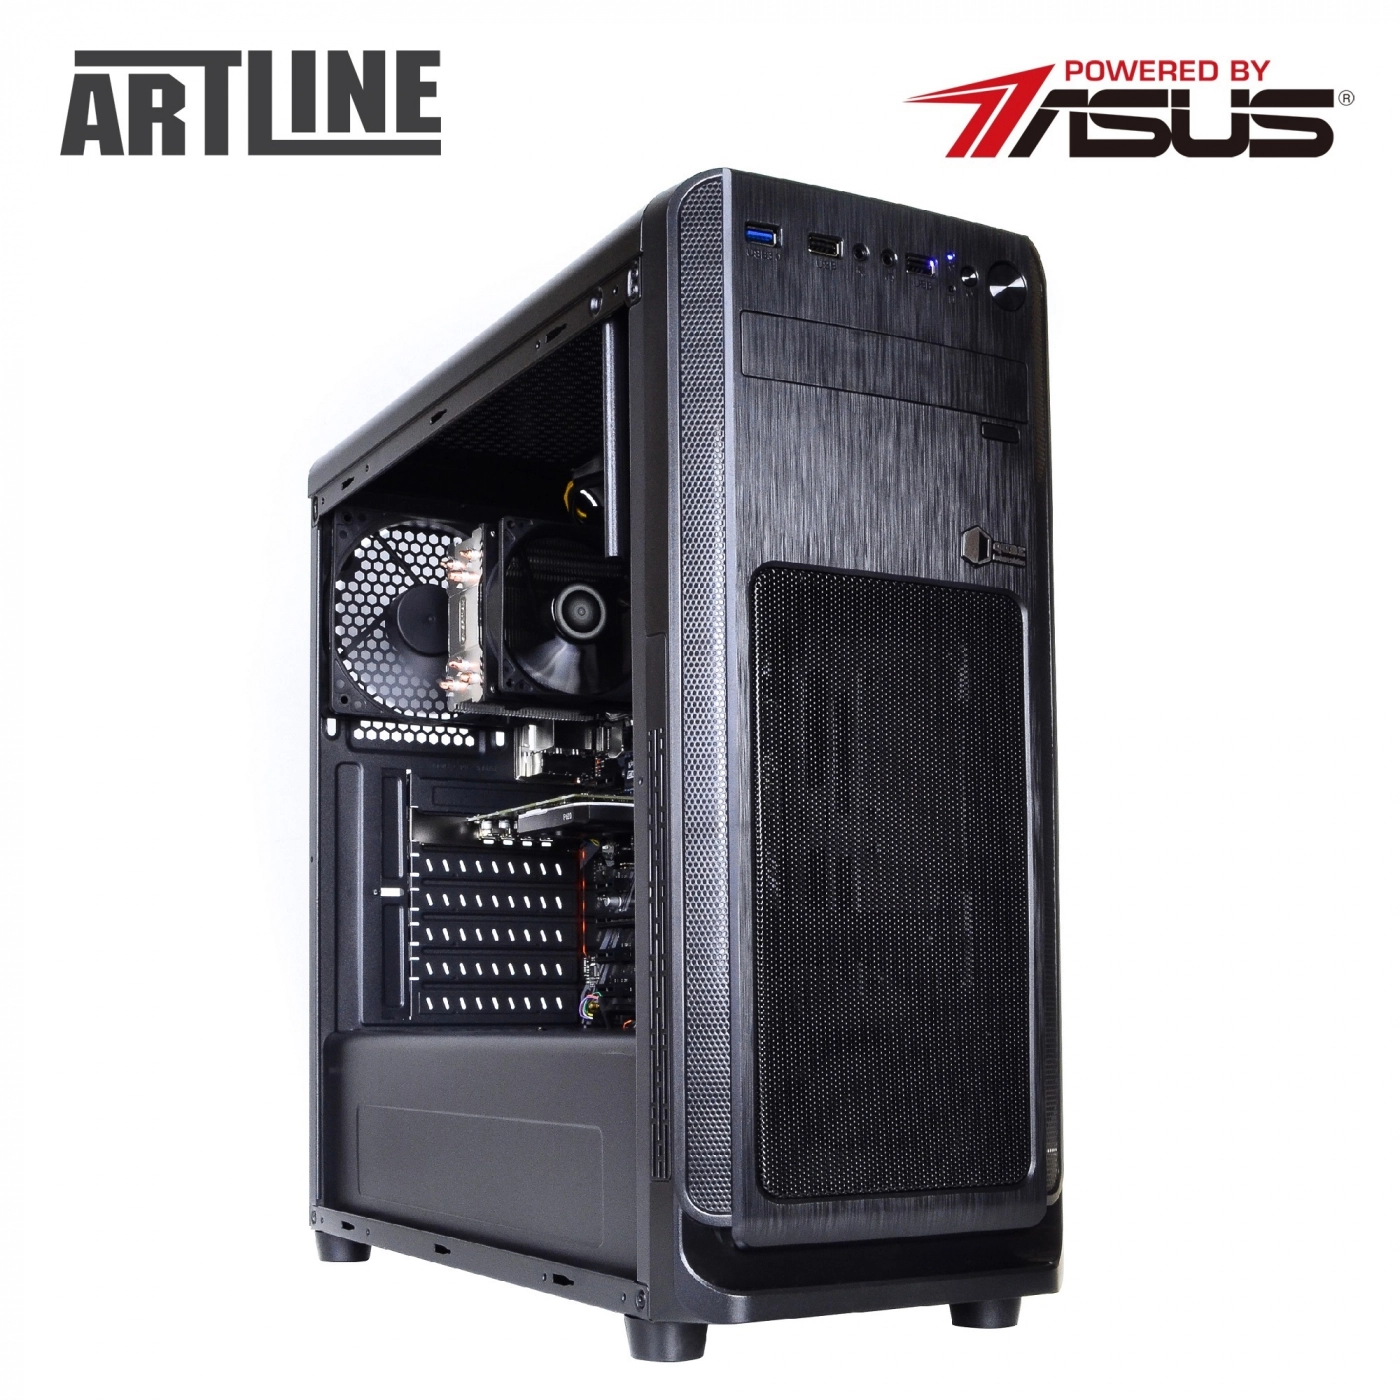 Купить Сервер ARTLINE Business T25v36 - фото 8